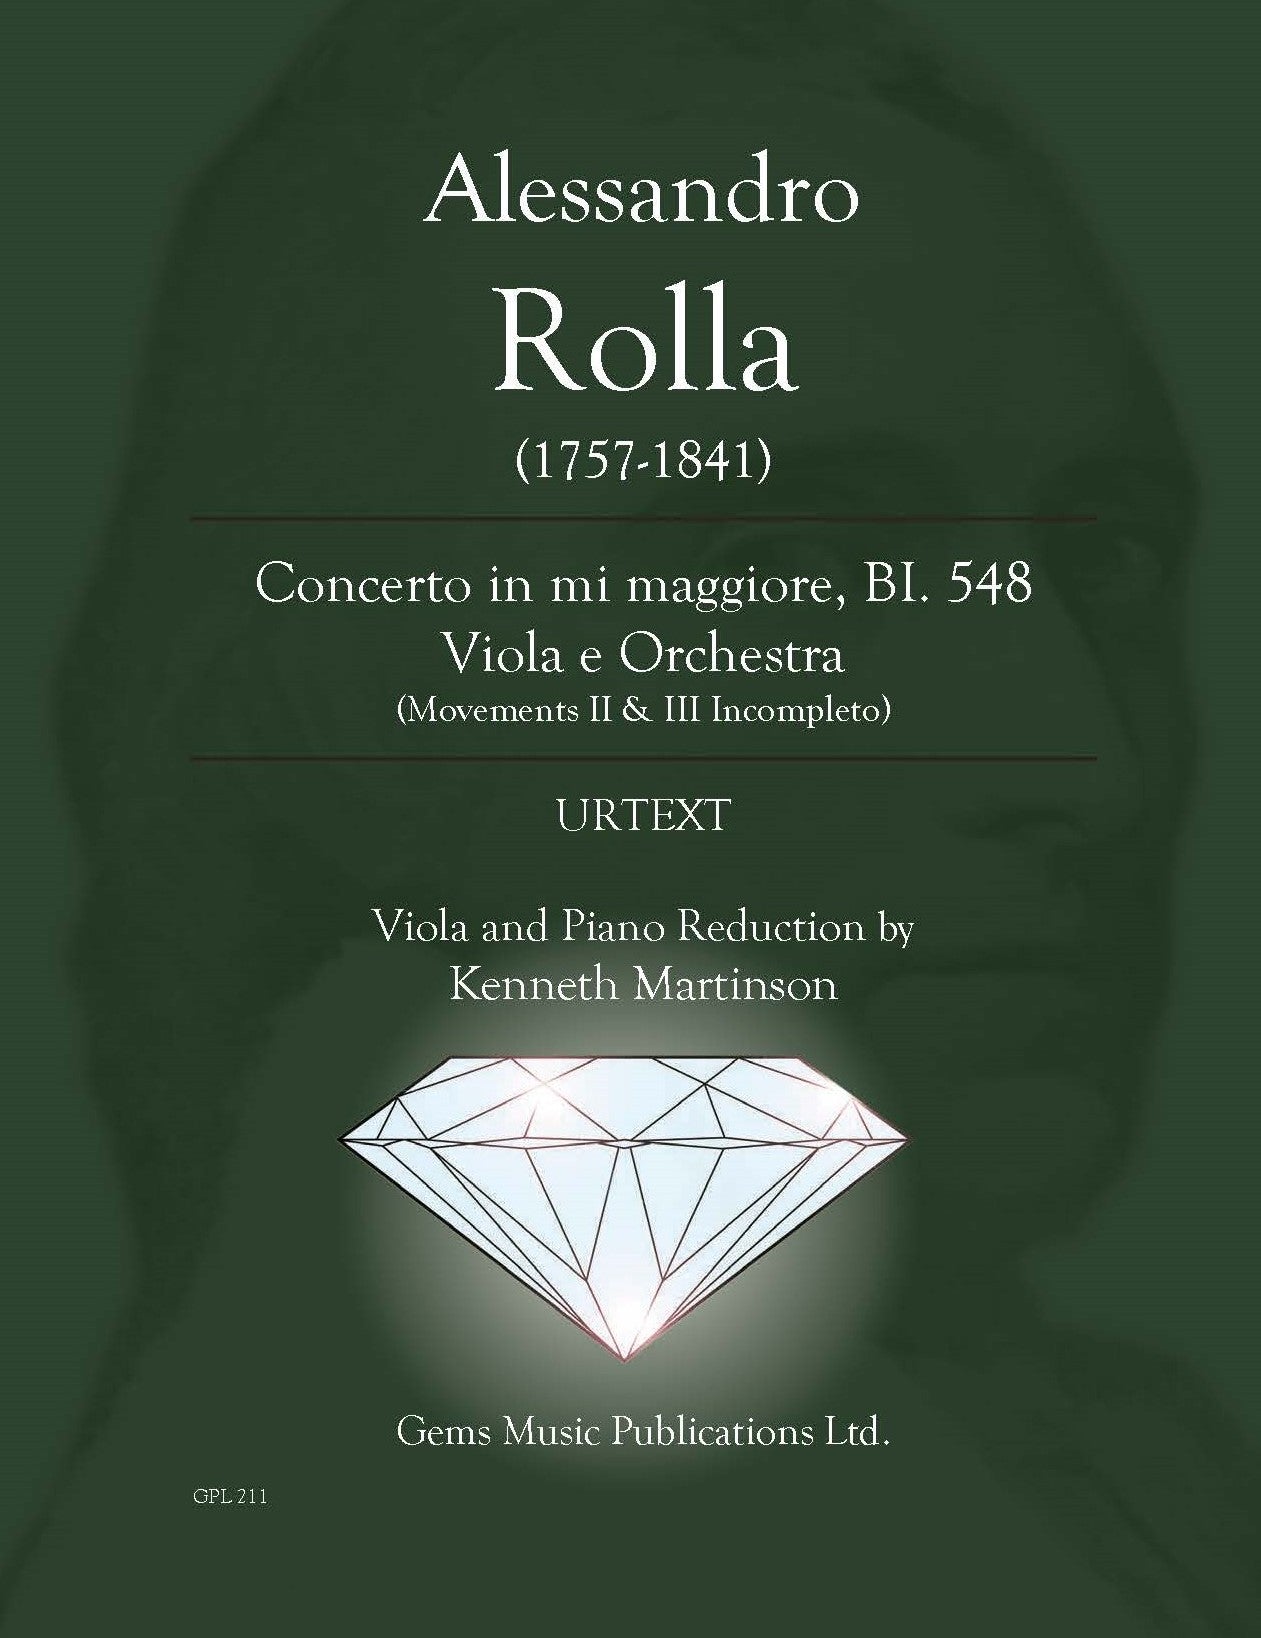 Rolla: Viola Concerto in E Major, BI. 548